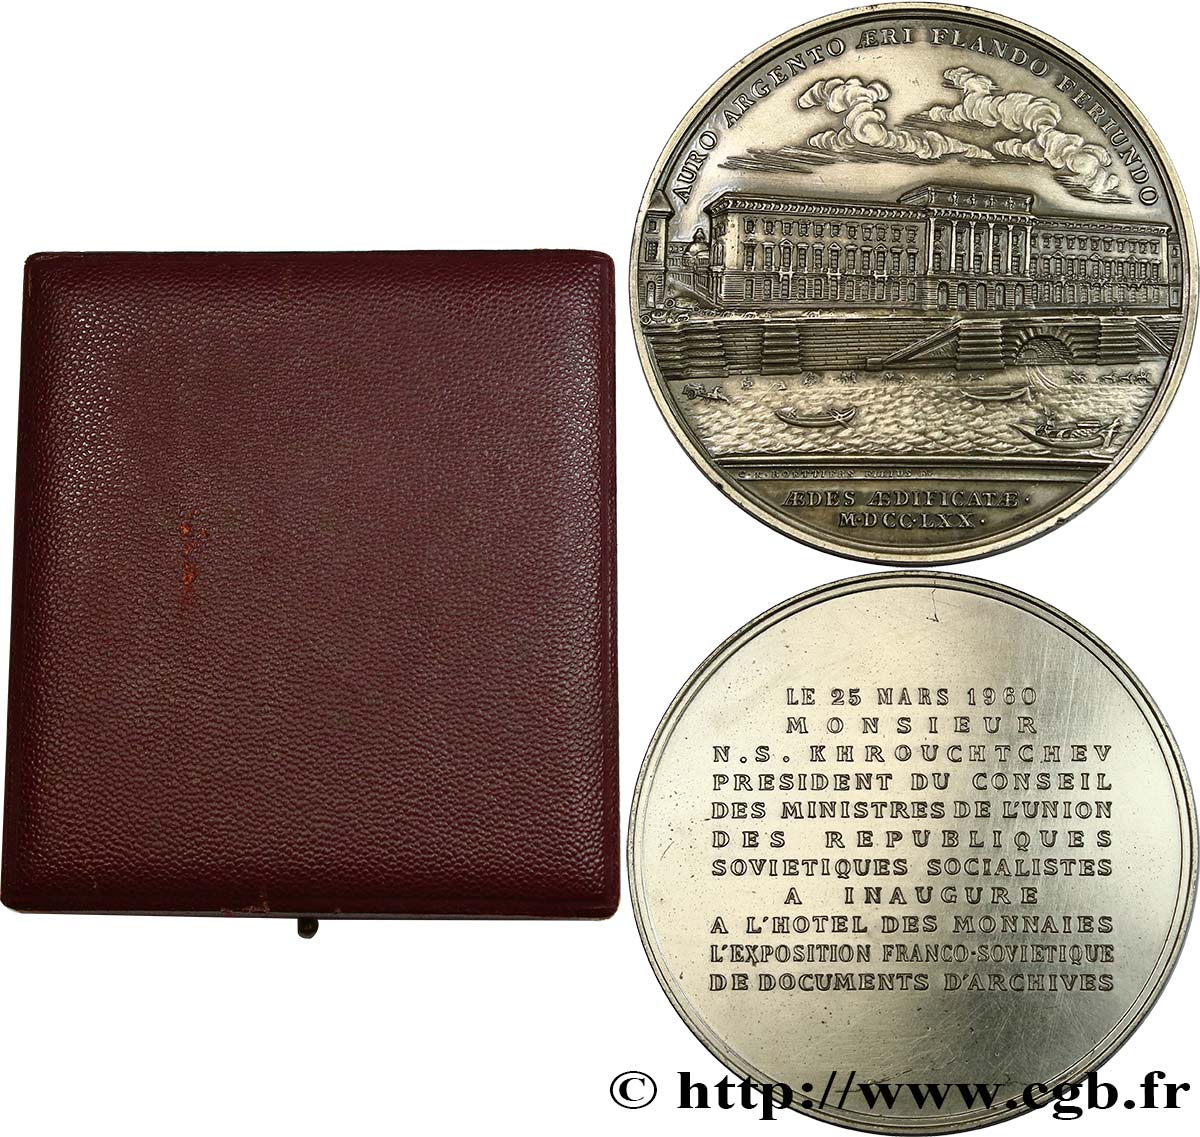 QUINTA REPUBBLICA FRANCESE Médaille pour la visite de la Monnaie, exposition franco-soviétique SPL